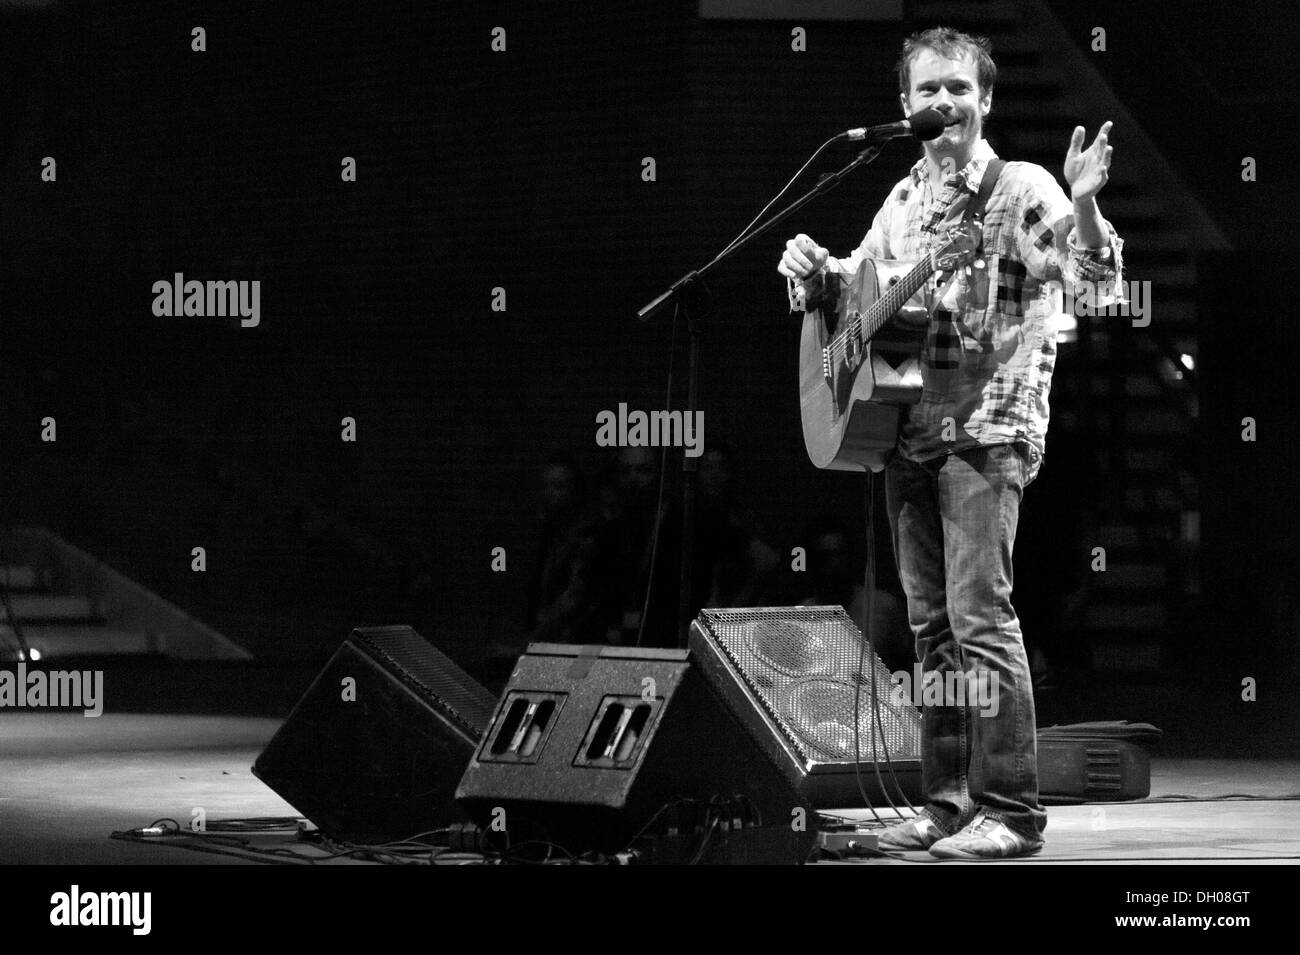 Canzone irlandese-writer Damien Rice esegue presso Auditorium Parco della Musica di Roma (SI) 2012 Foto Stock